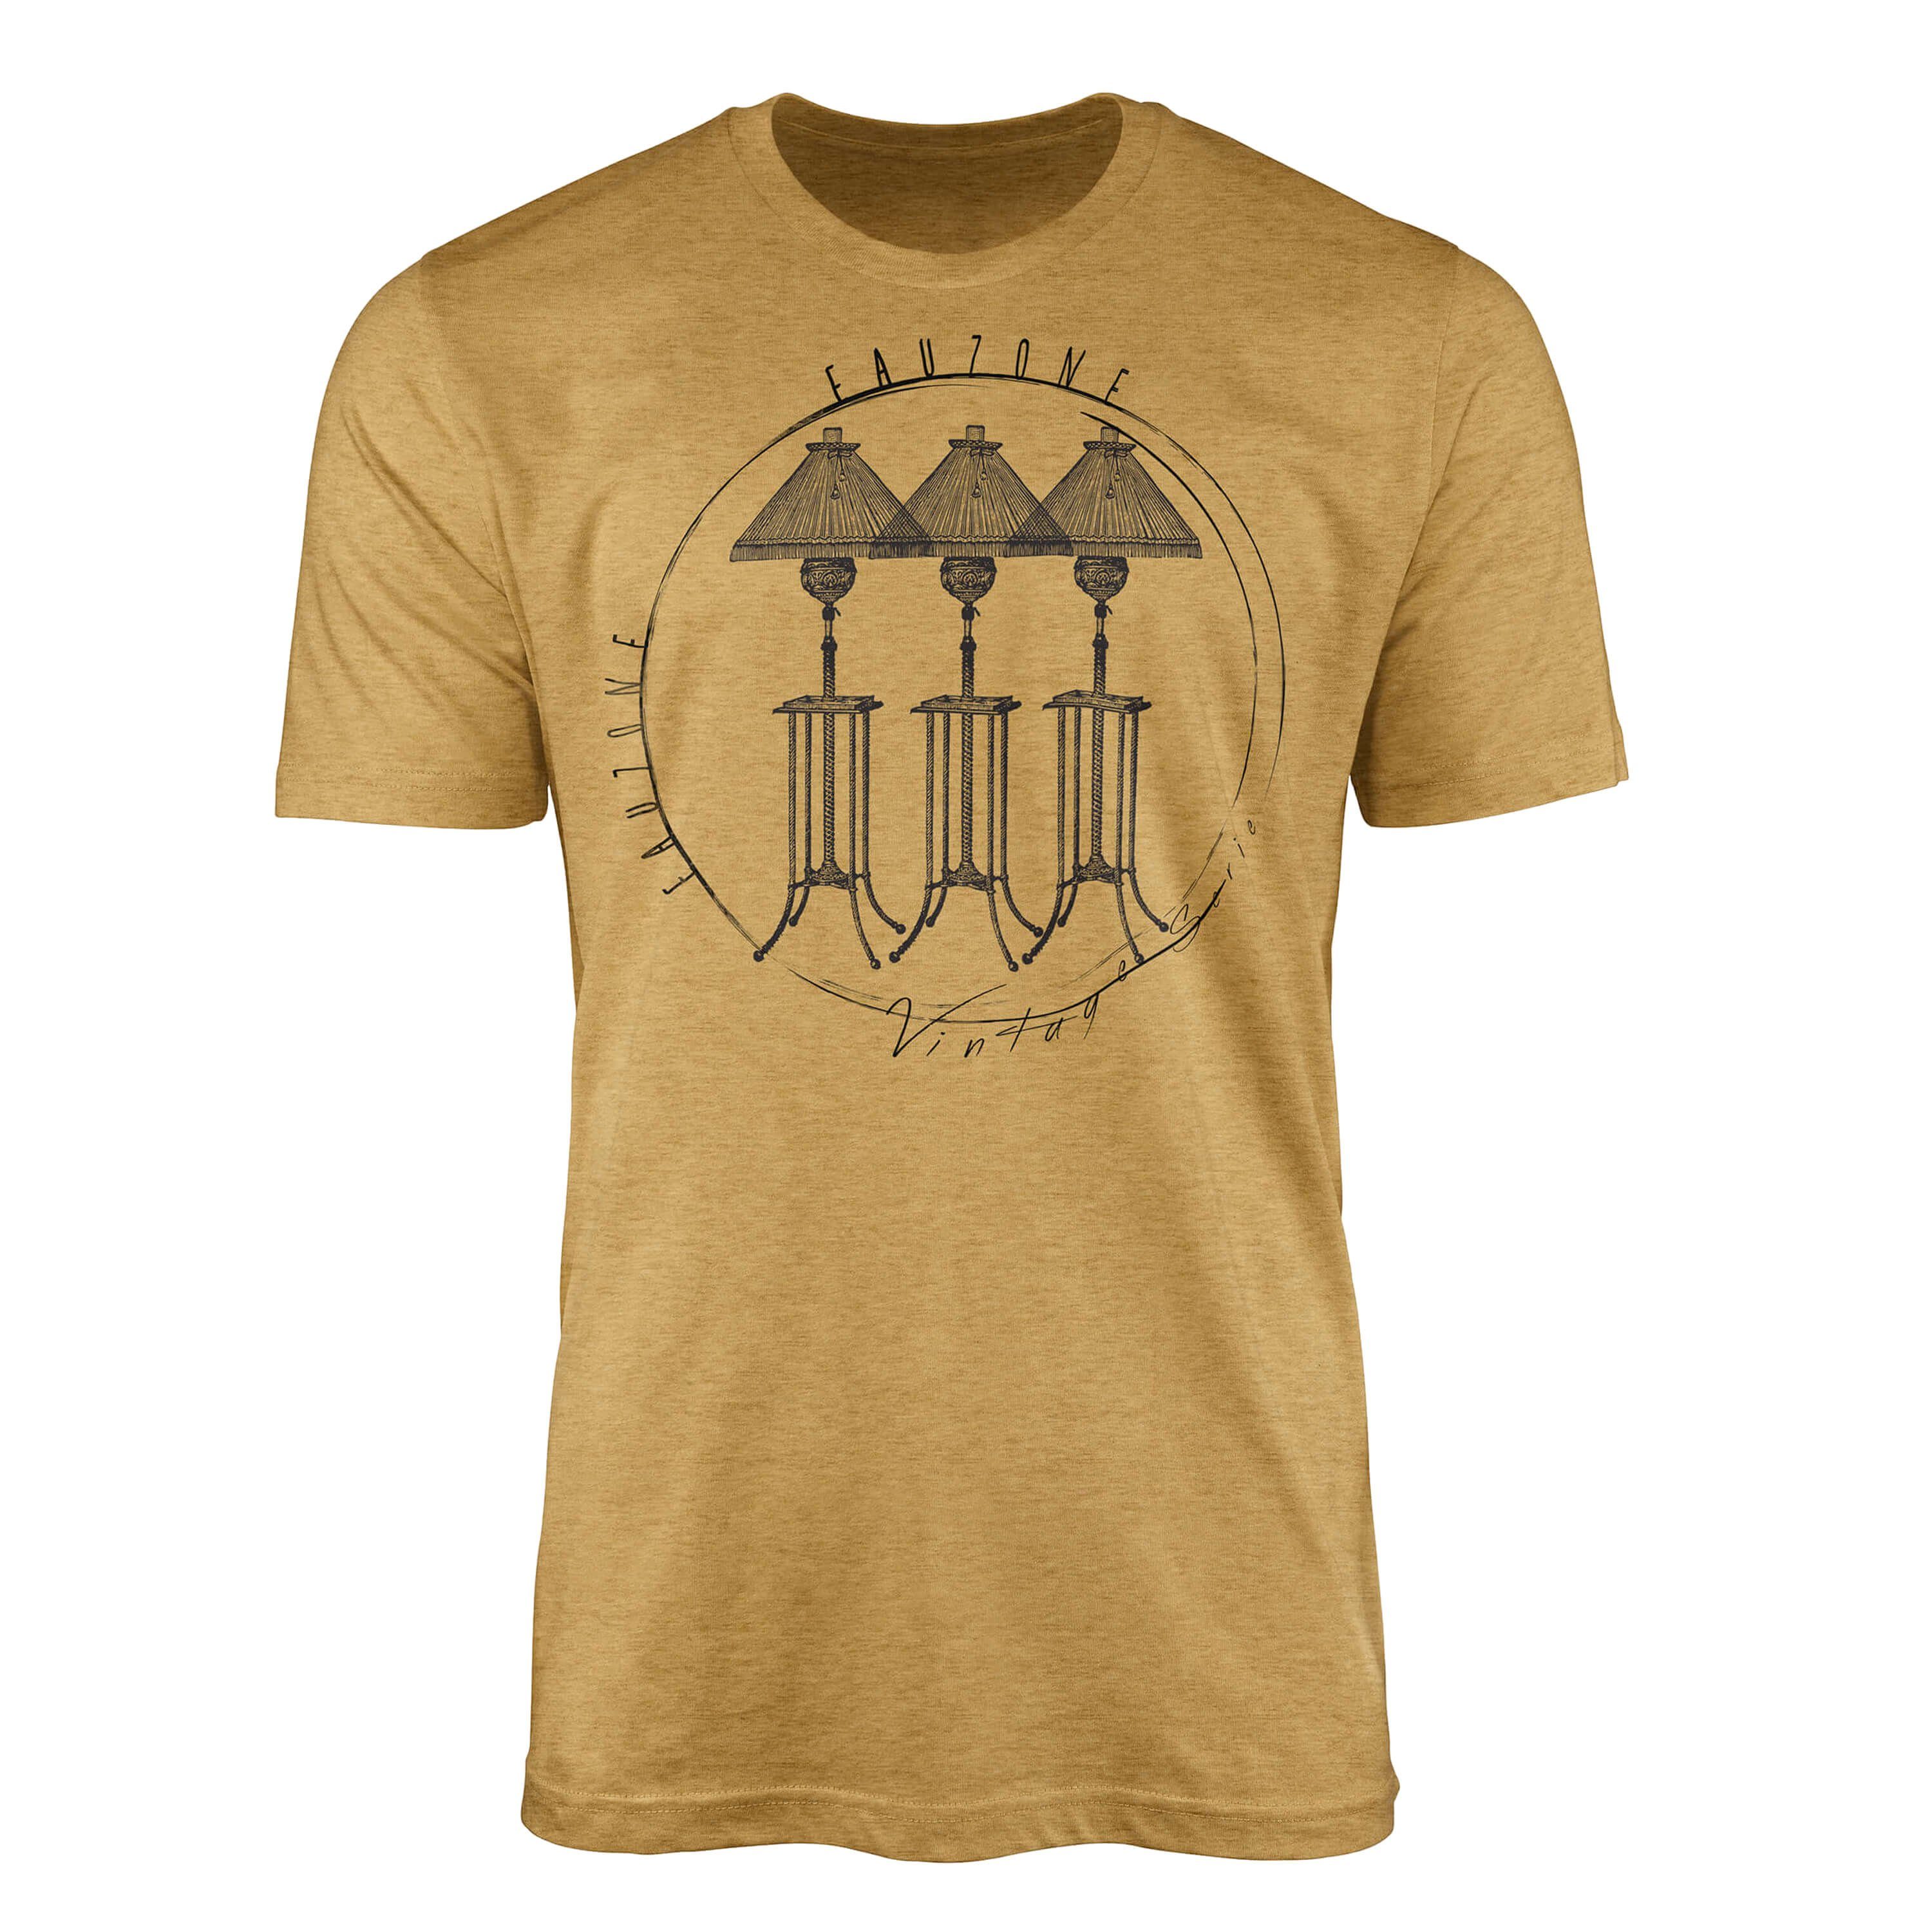 Sinus Art T-Shirt Vintage Herren T-Shirt Stehlampen Antique Gold